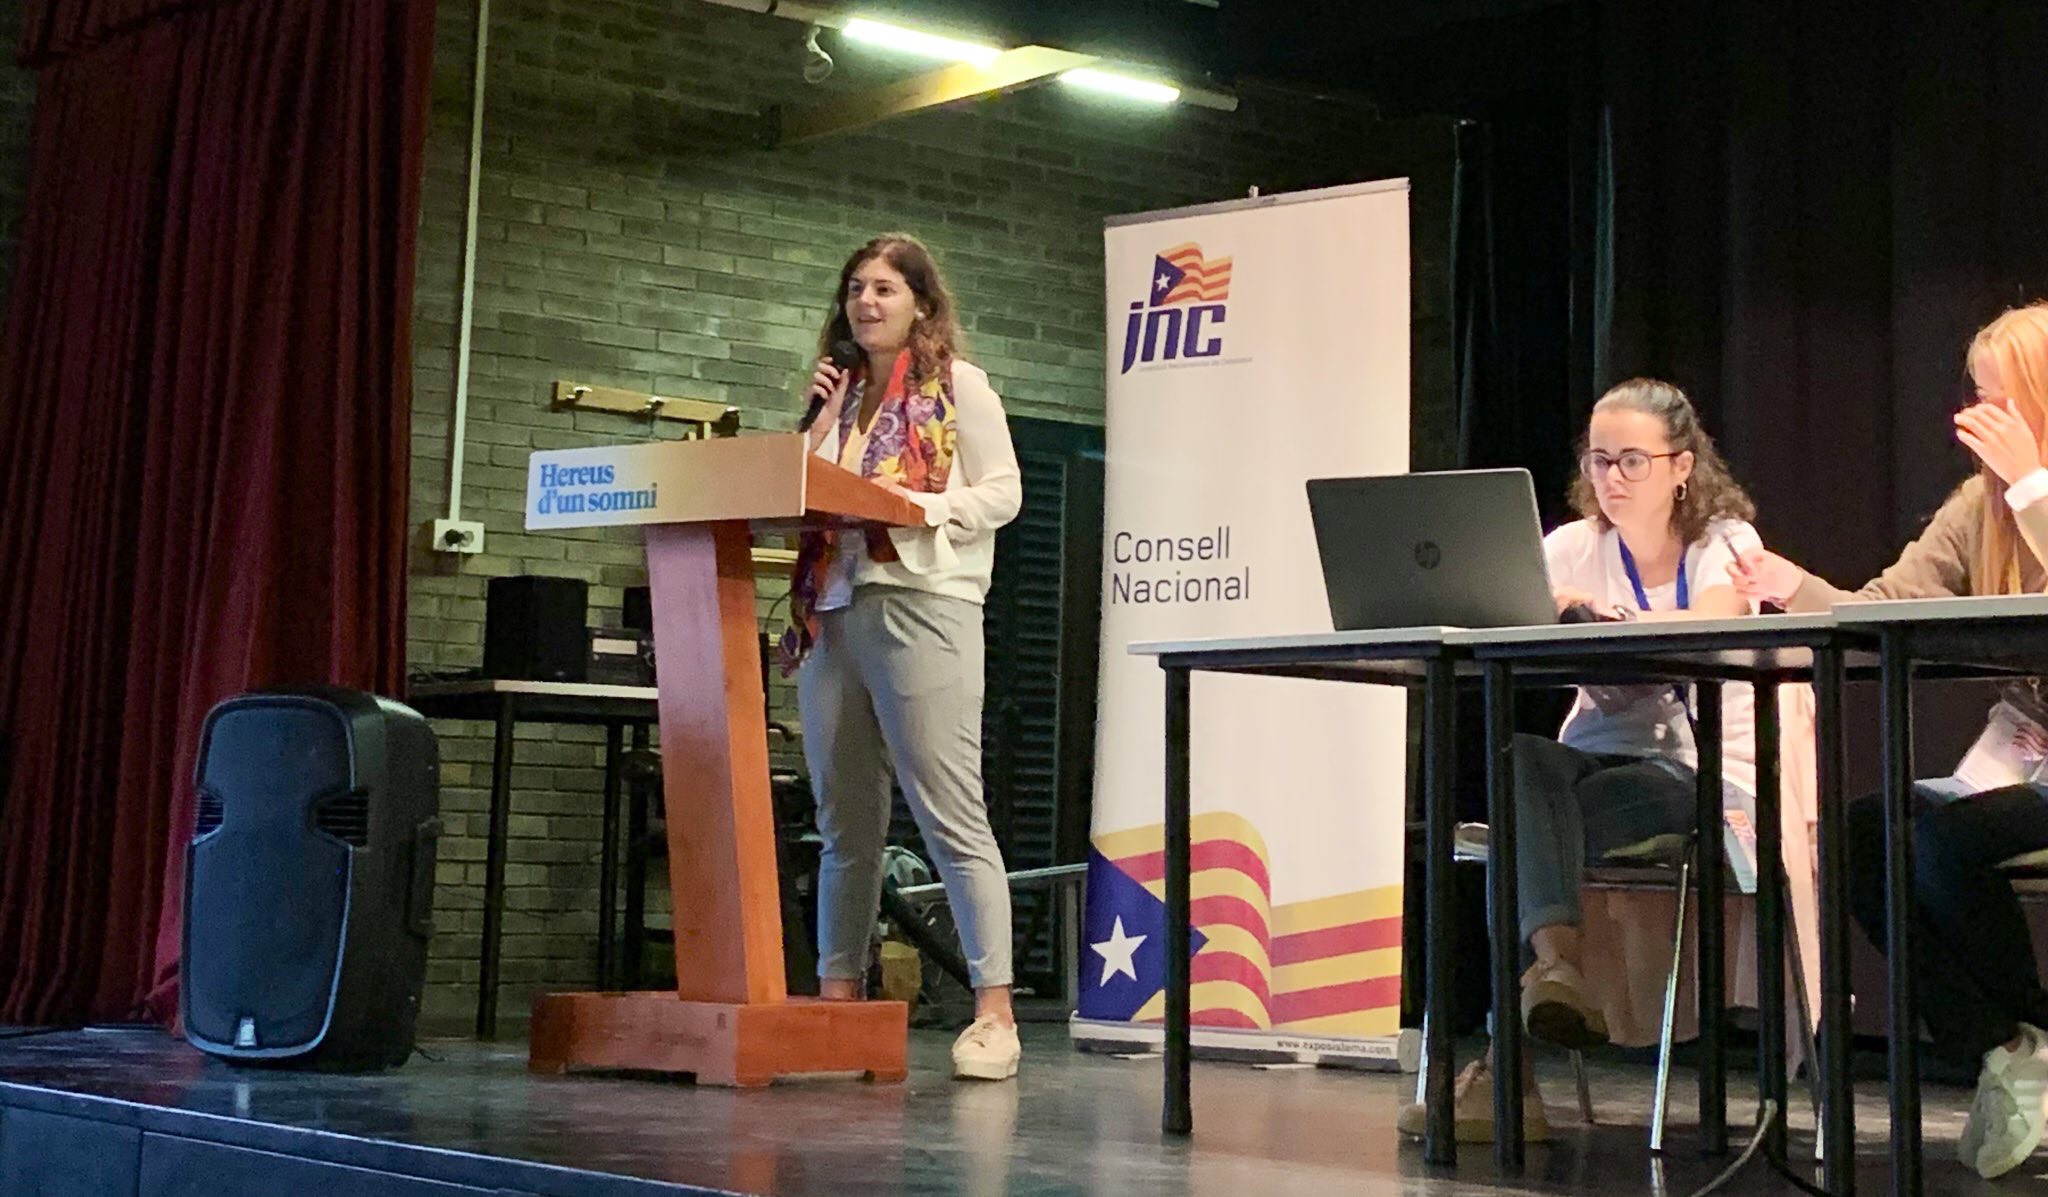 Un moment de la intervenció de Sandra Grau, cap comarcal de la JNC Osona